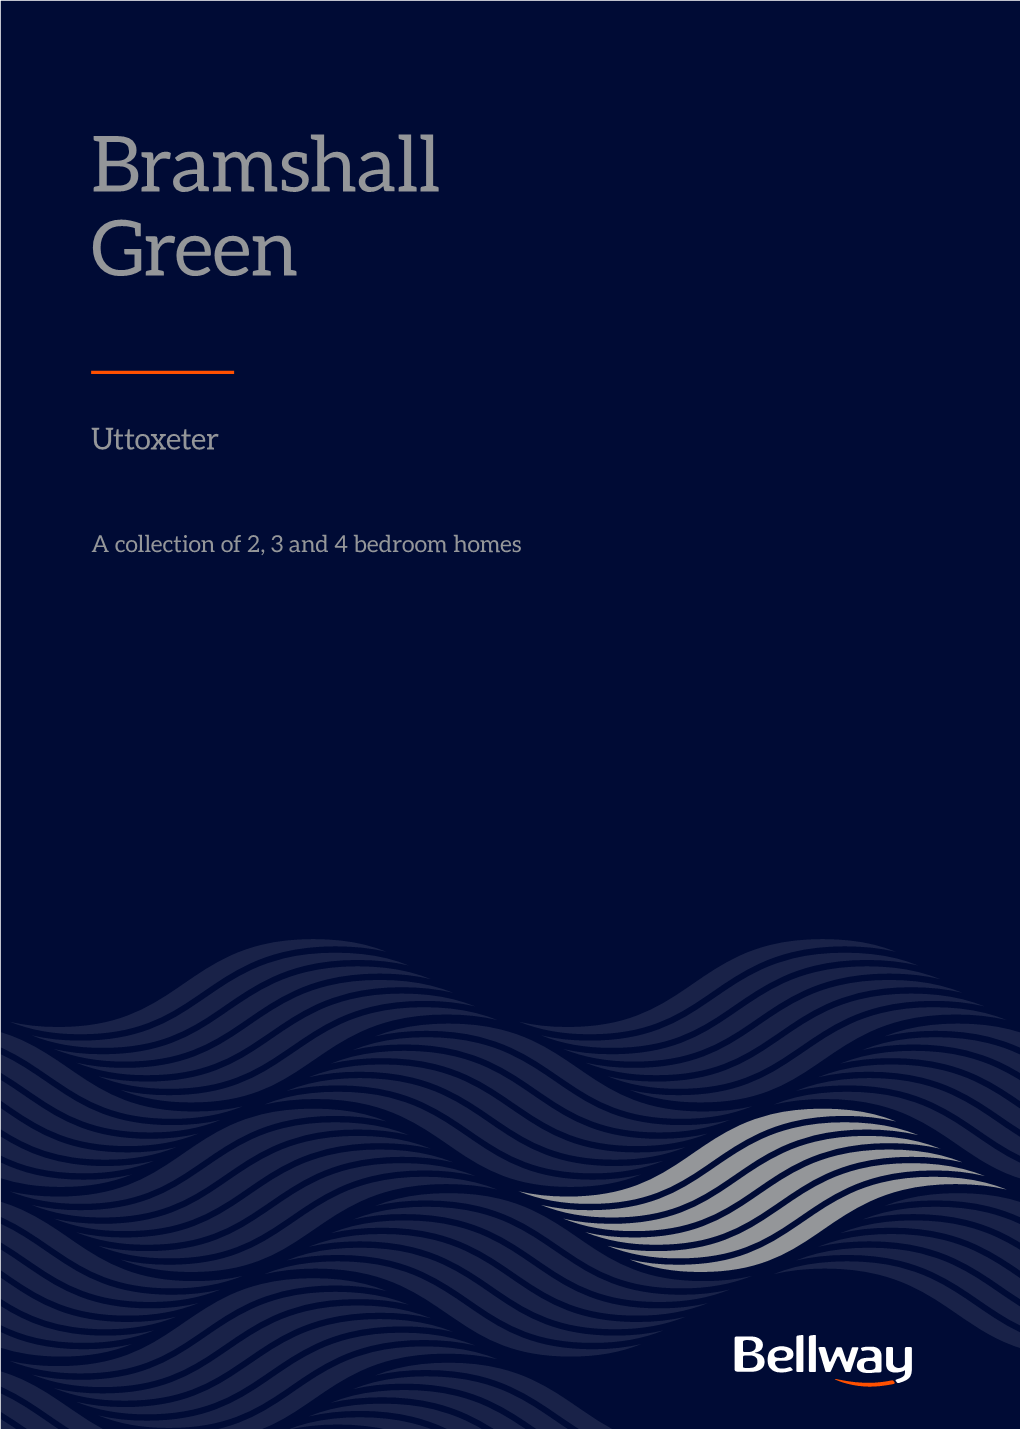 Bramshall Green Brochure